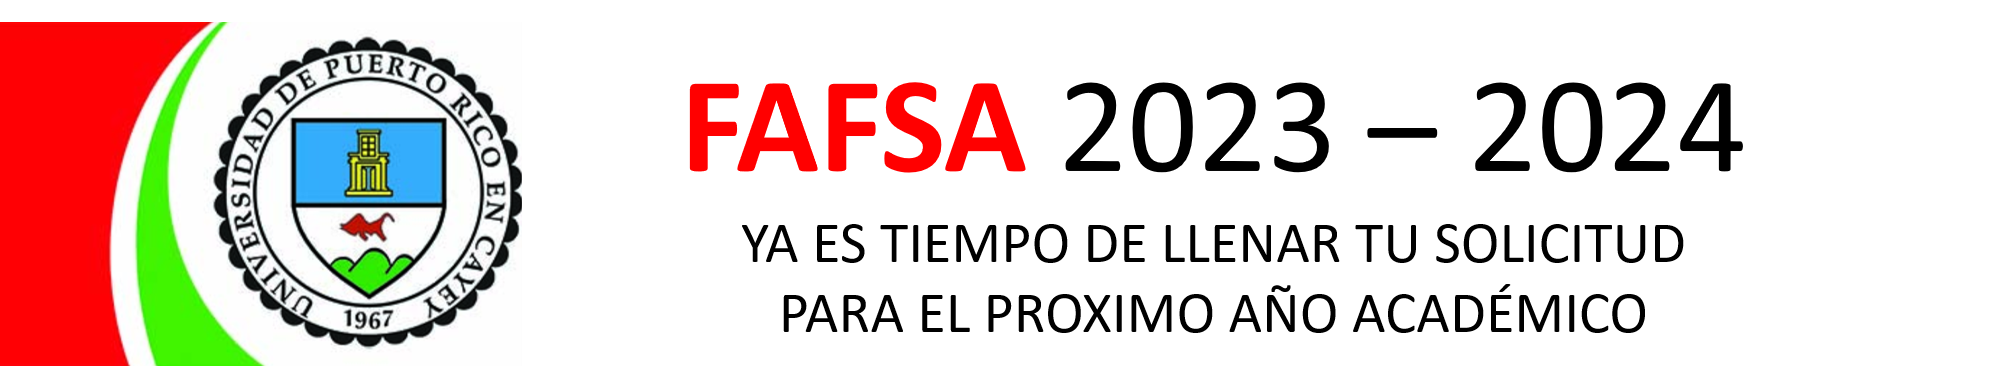 Imagen Banner FAFSA